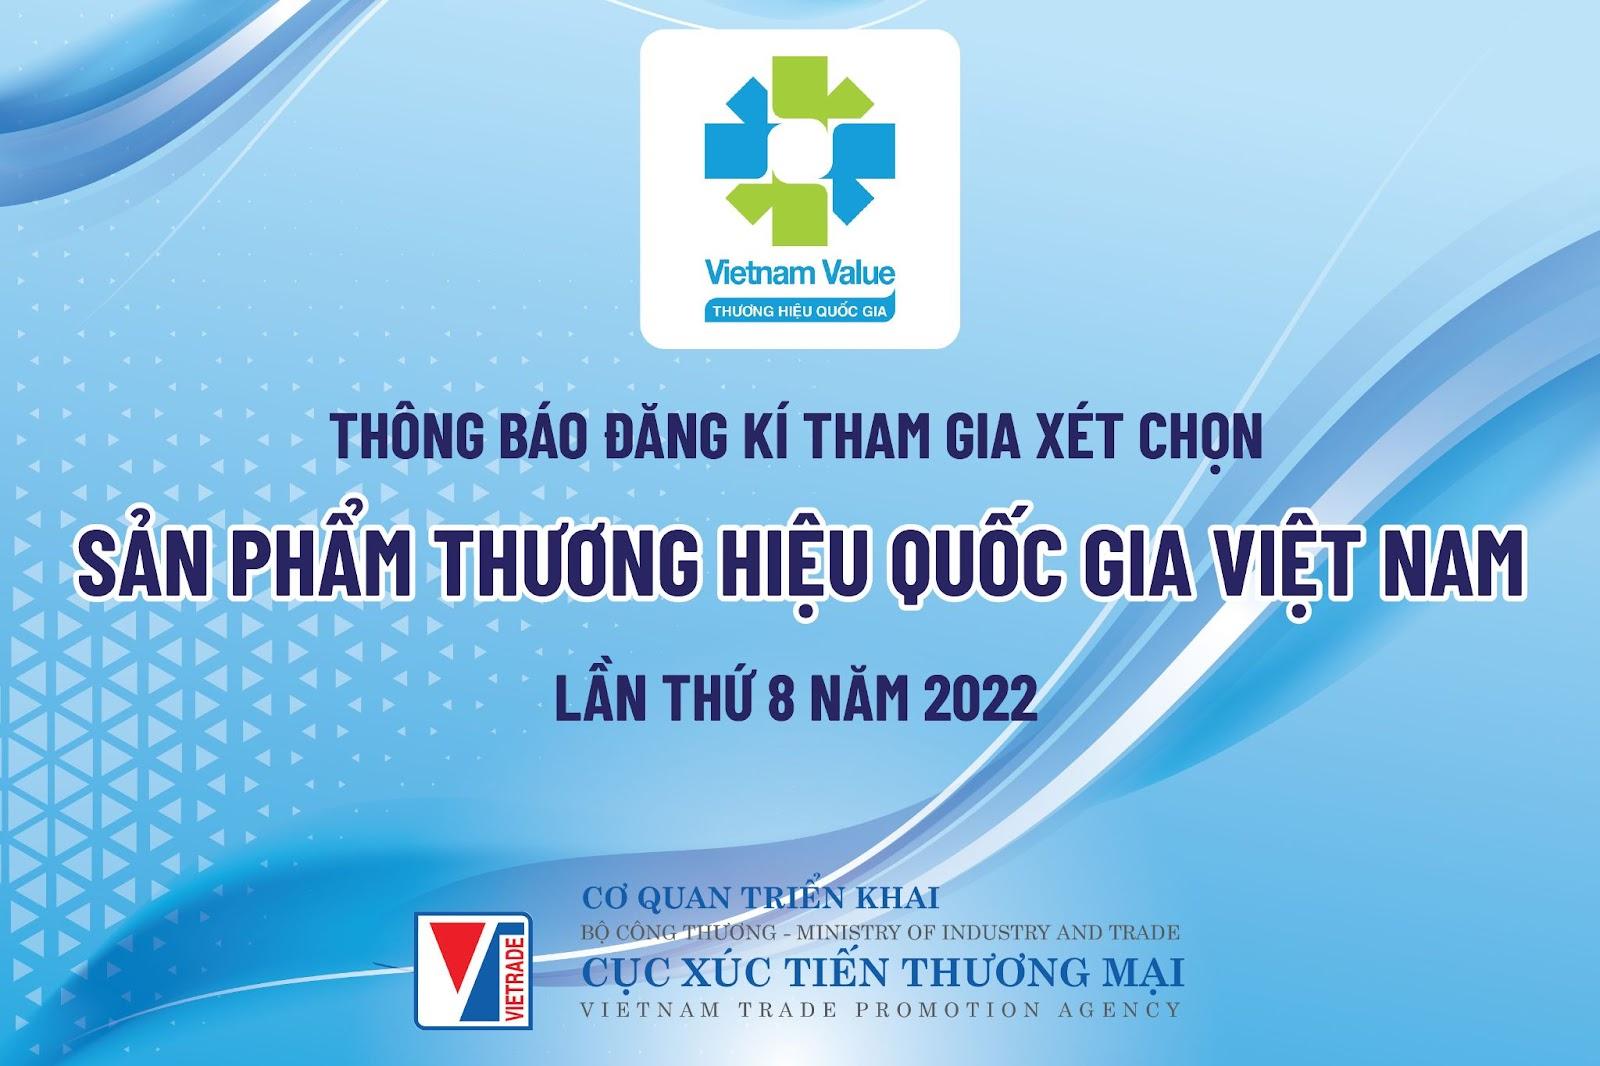 Đăng ký tham gia xét chọn Thương hiệu quốc gia Việt Nam lần thứ 8 năm 2022